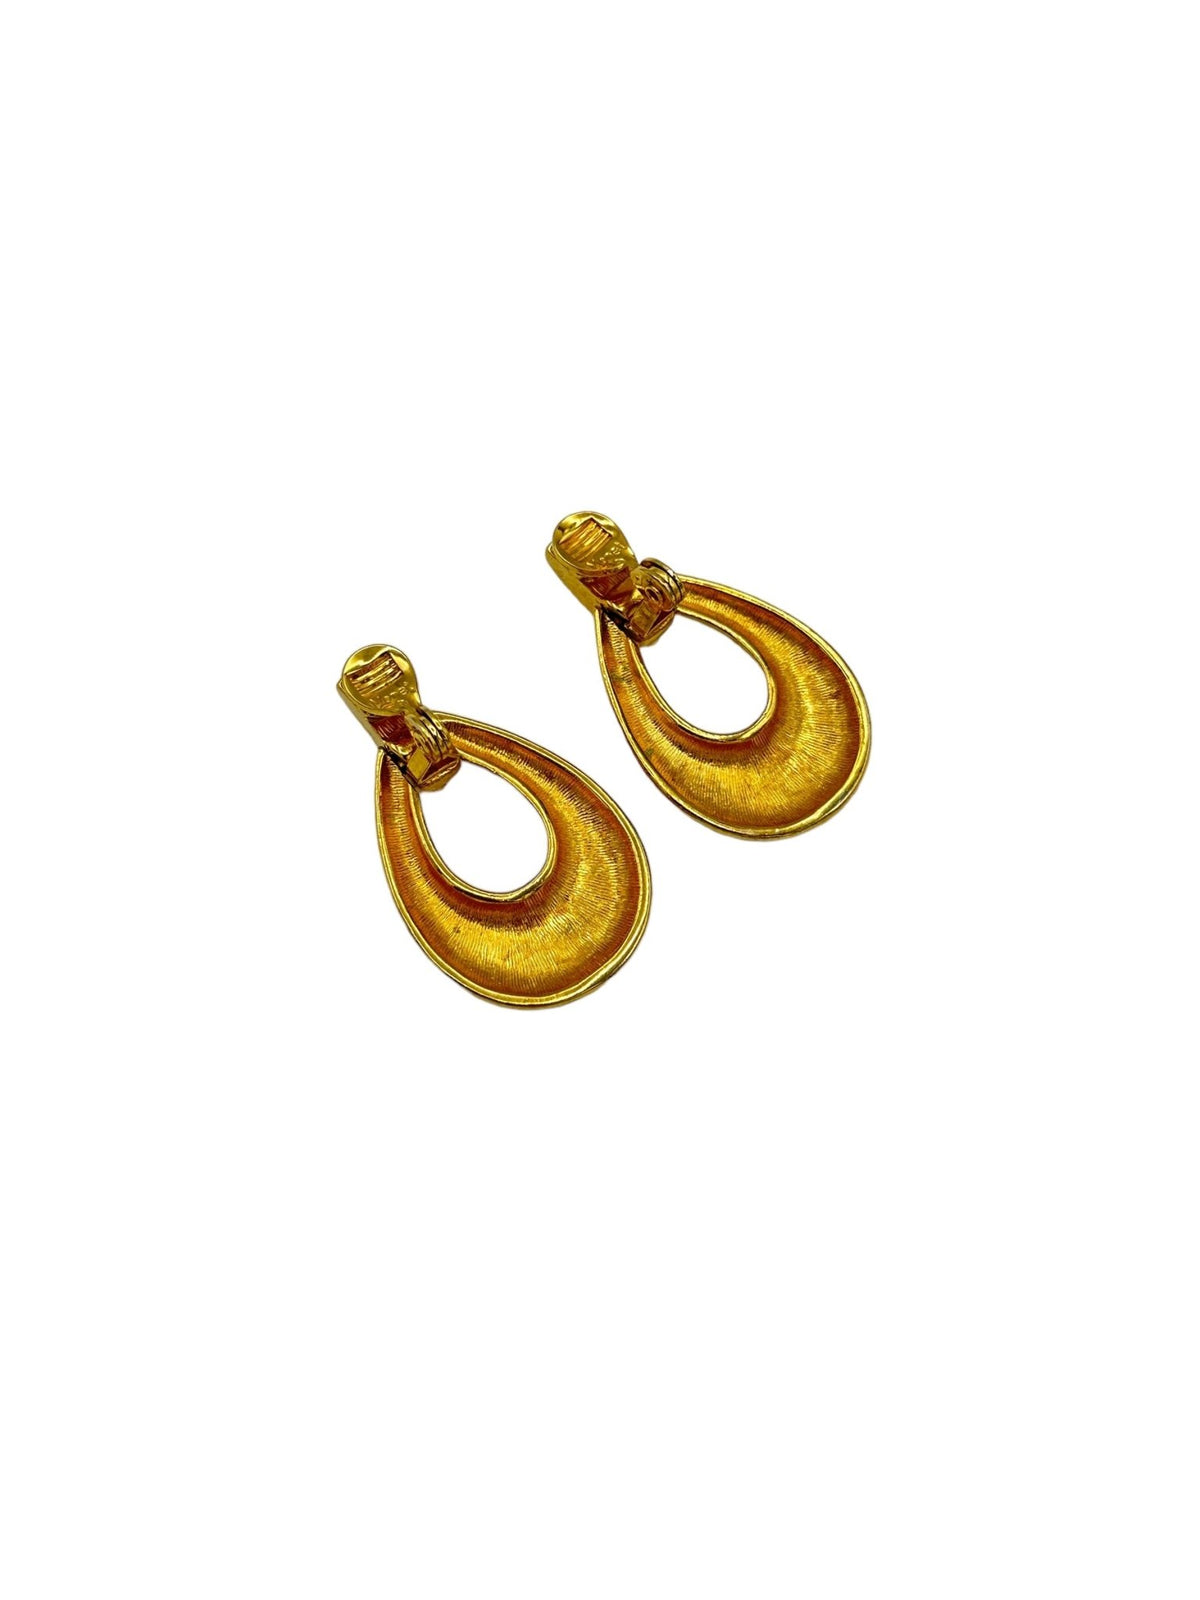 Monet Vintage Jewelry Gold Teardrop Hammered Doorknocker Dangle Clip-On Earrings - 24 Wishes Vintage Jewelry